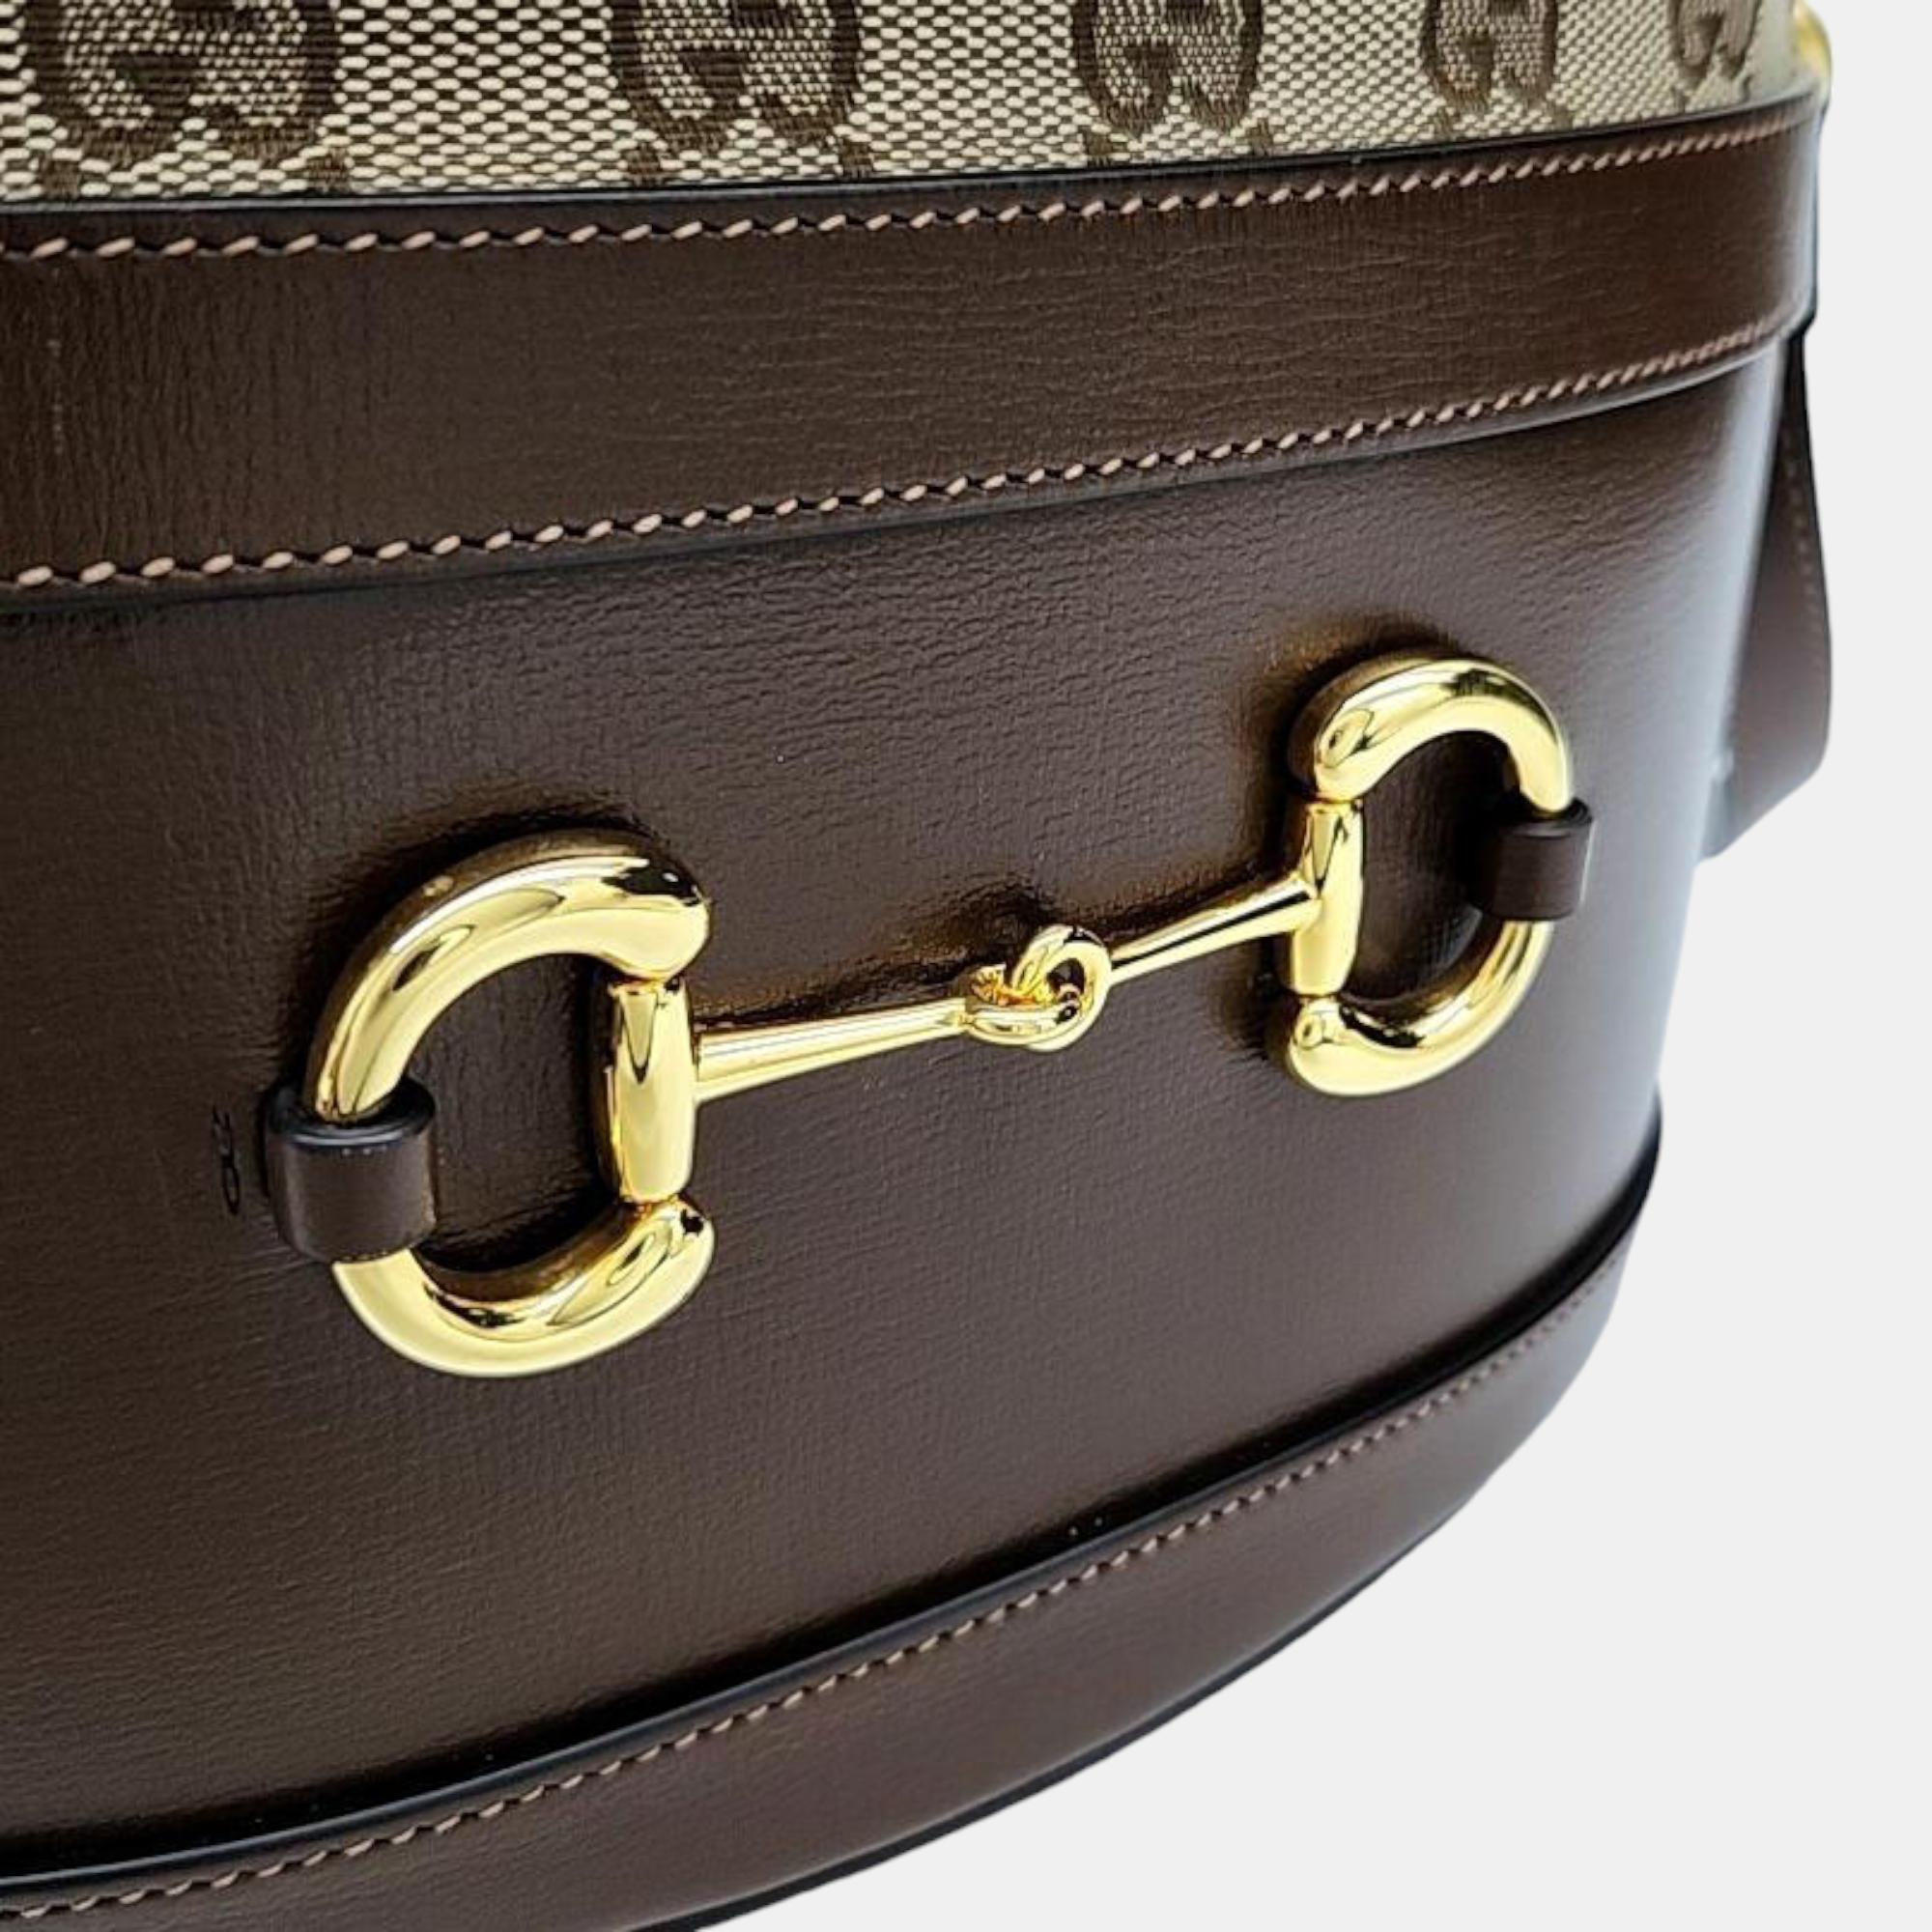 Gucci 1955 Horsebit Bucket Bag (602118)